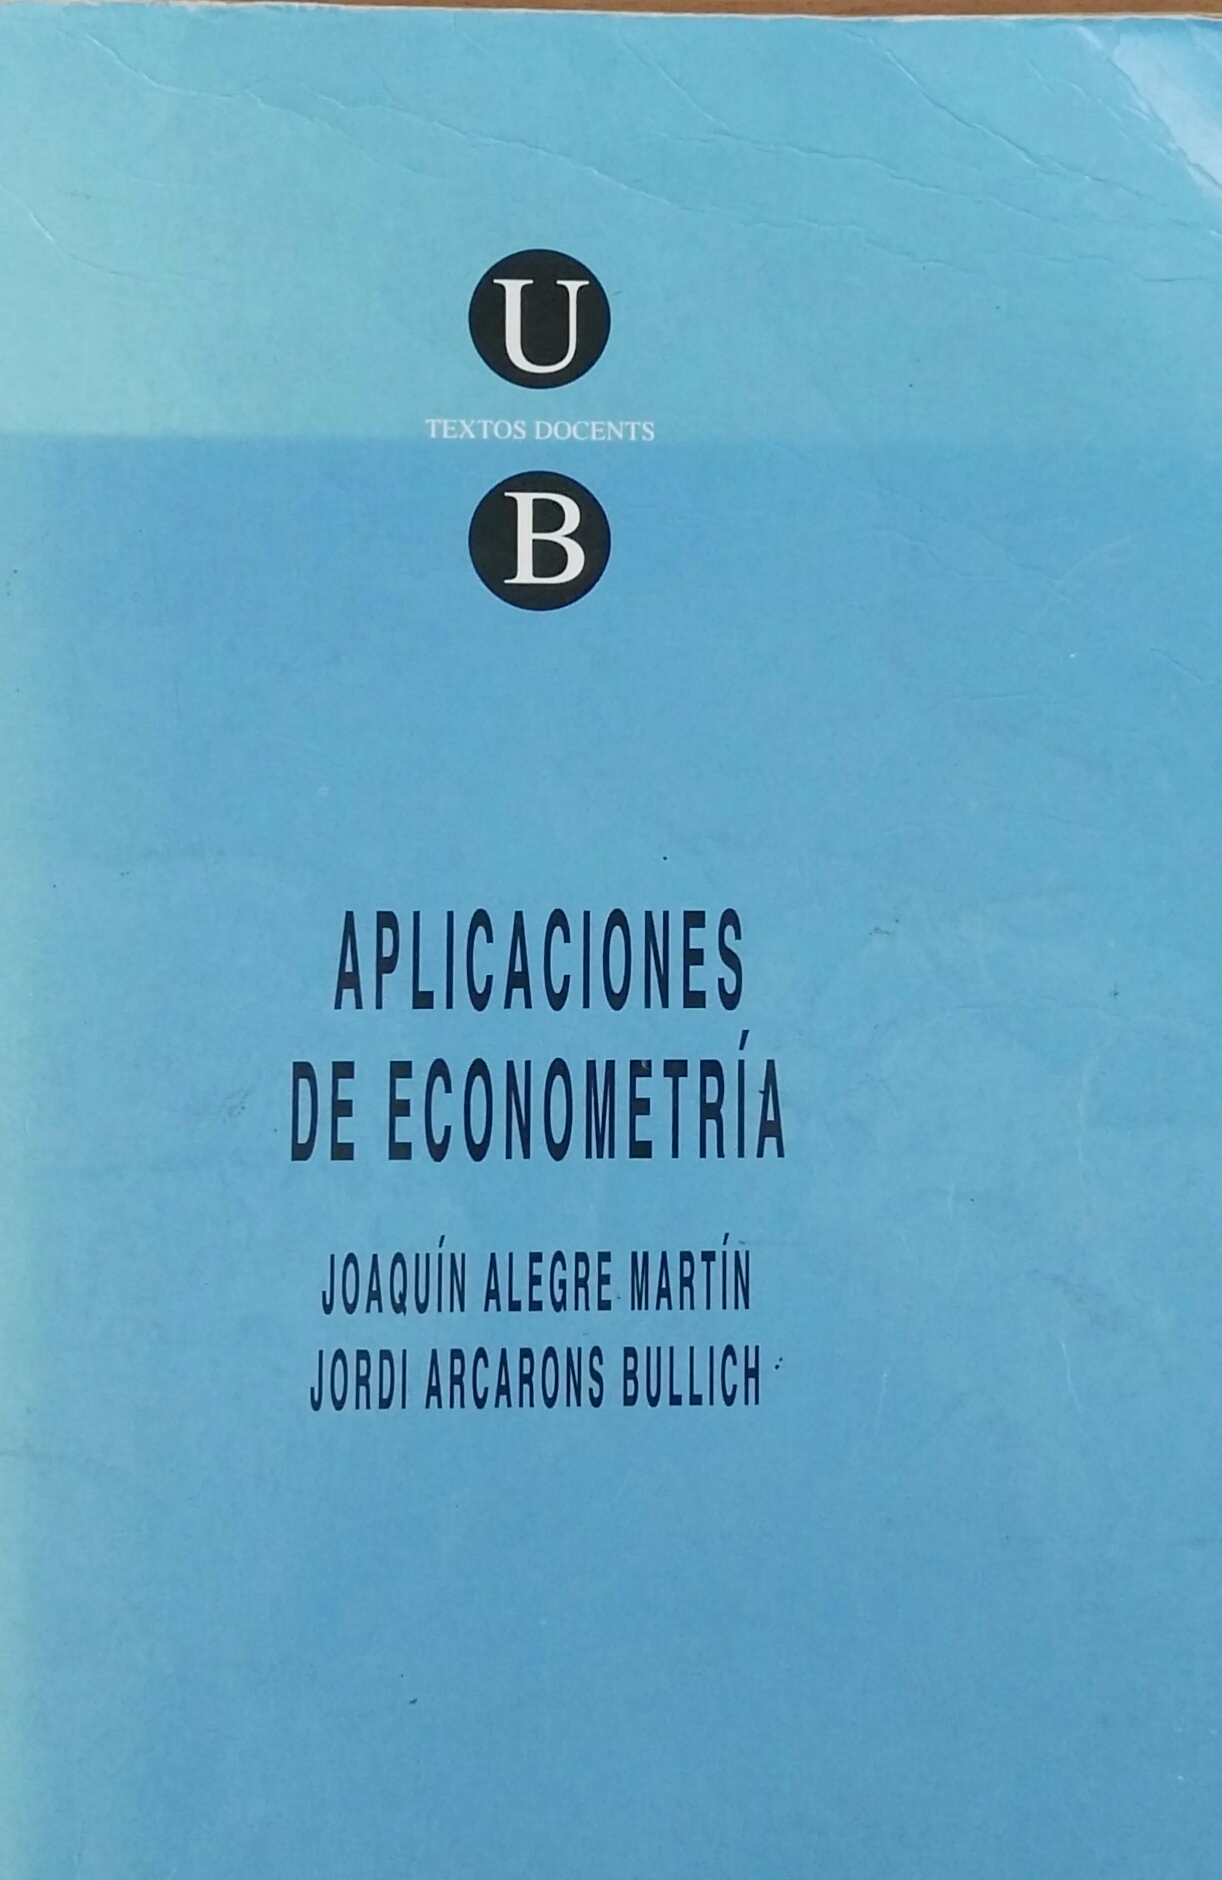 Imagen de portada del libro Aplicaciones de econometría